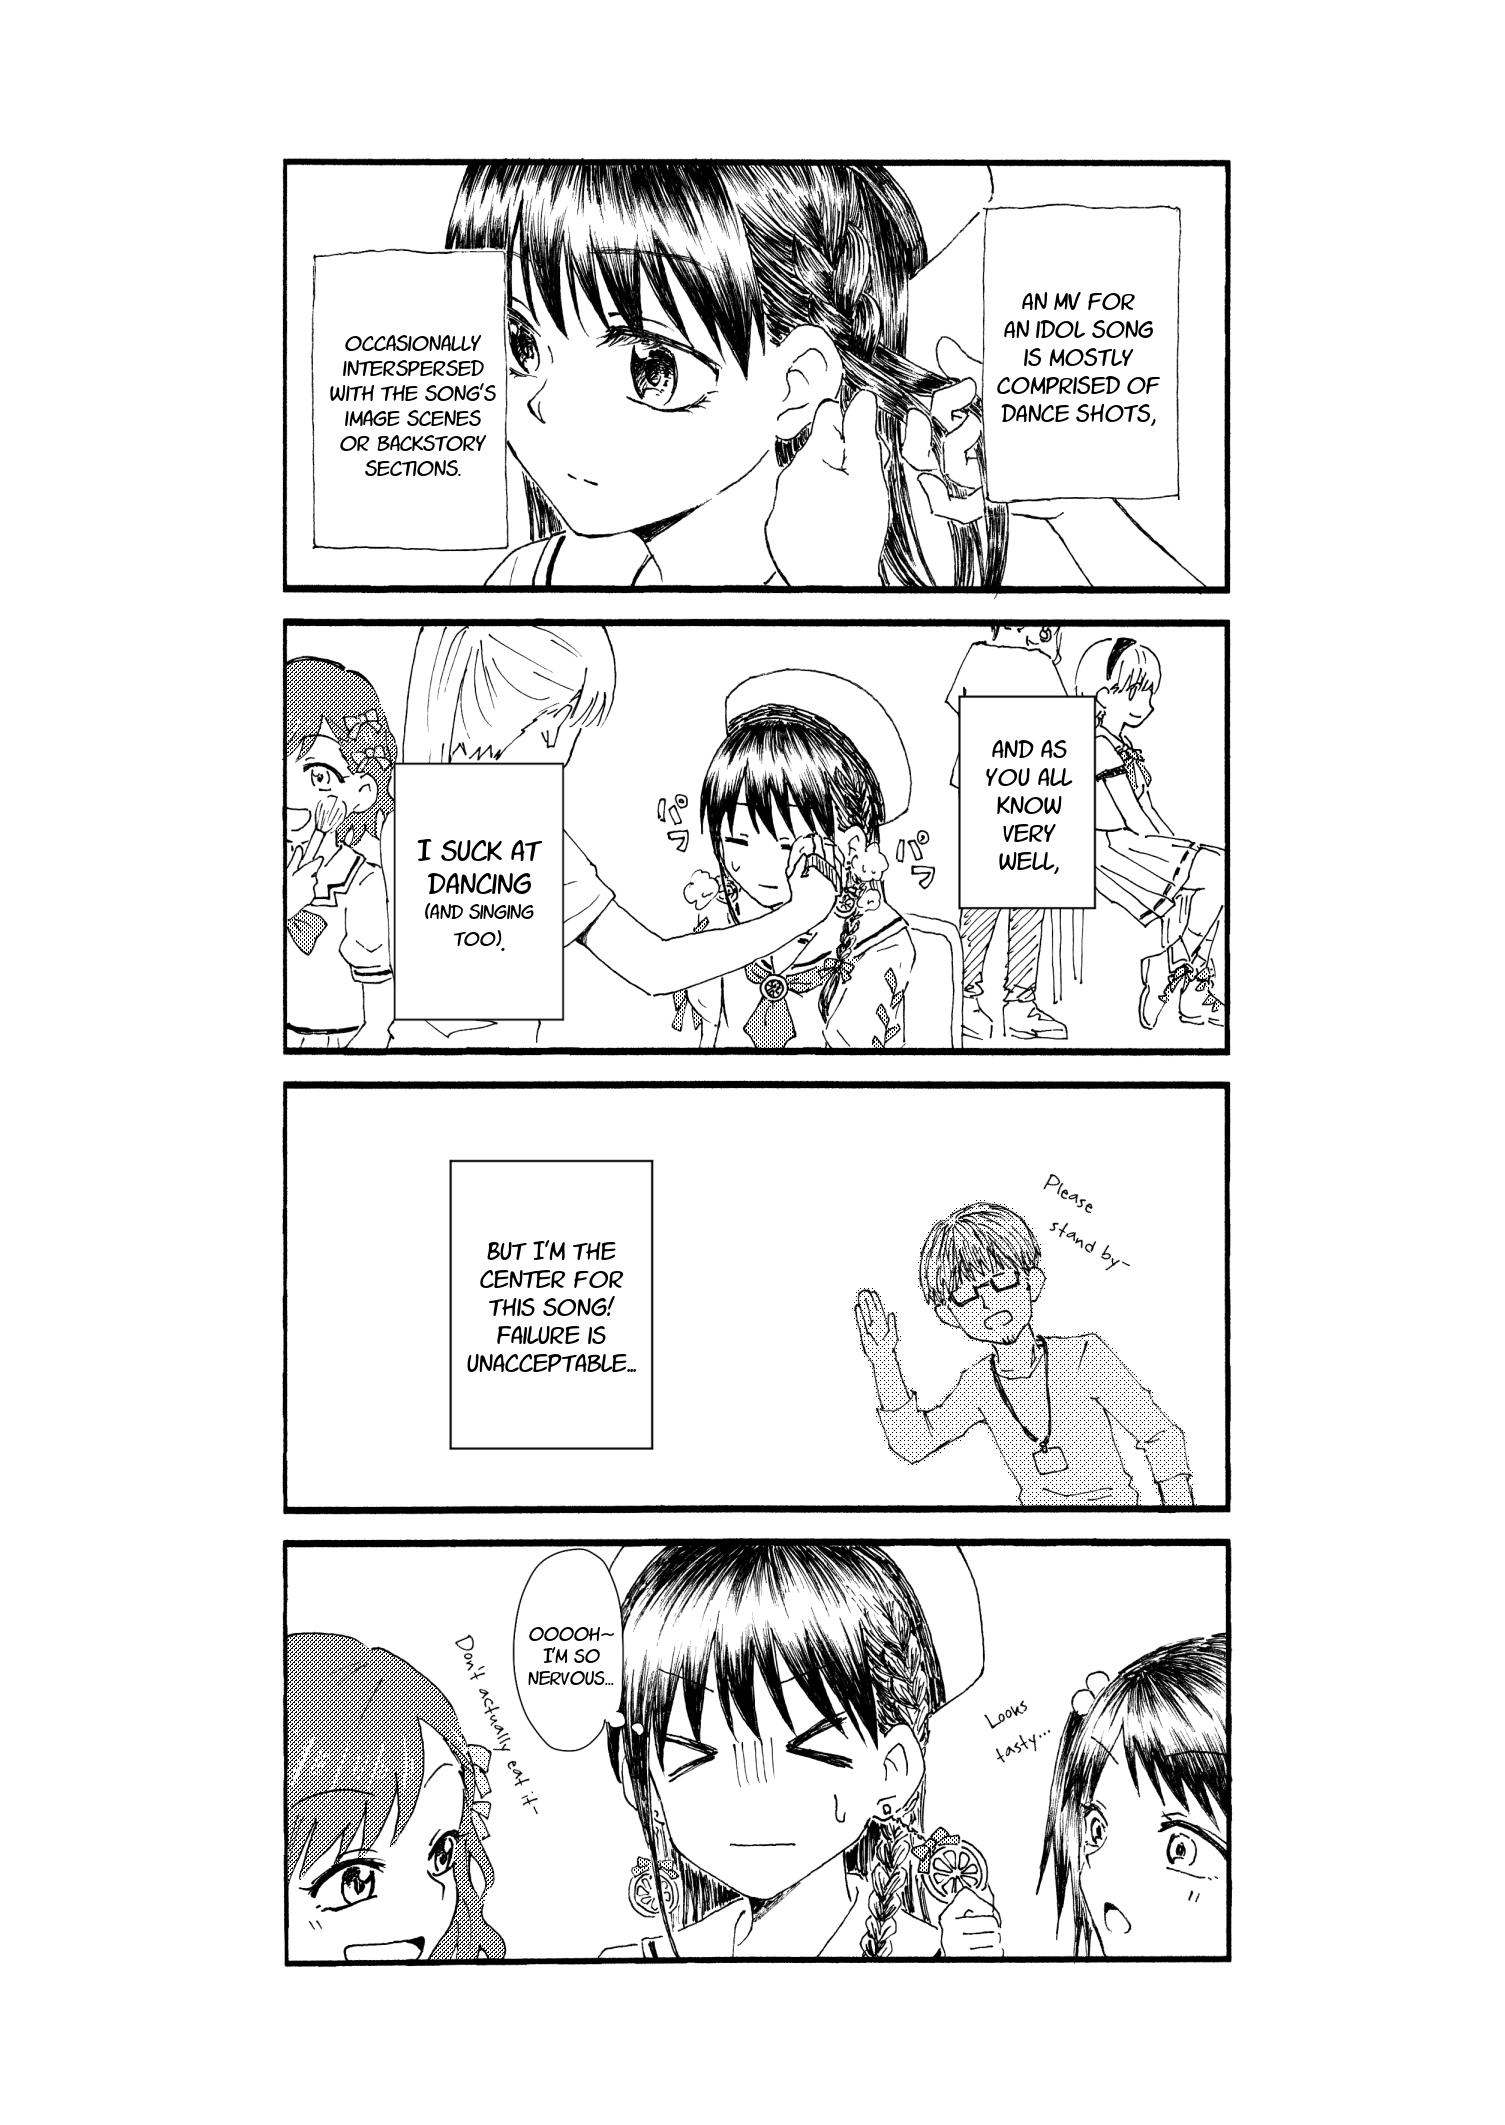 Kimoota, Idol Yarutteyo Chapter 21: Creepy Nerd, Shoots An Mv (Part 1) page 2 - Mangakakalots.com